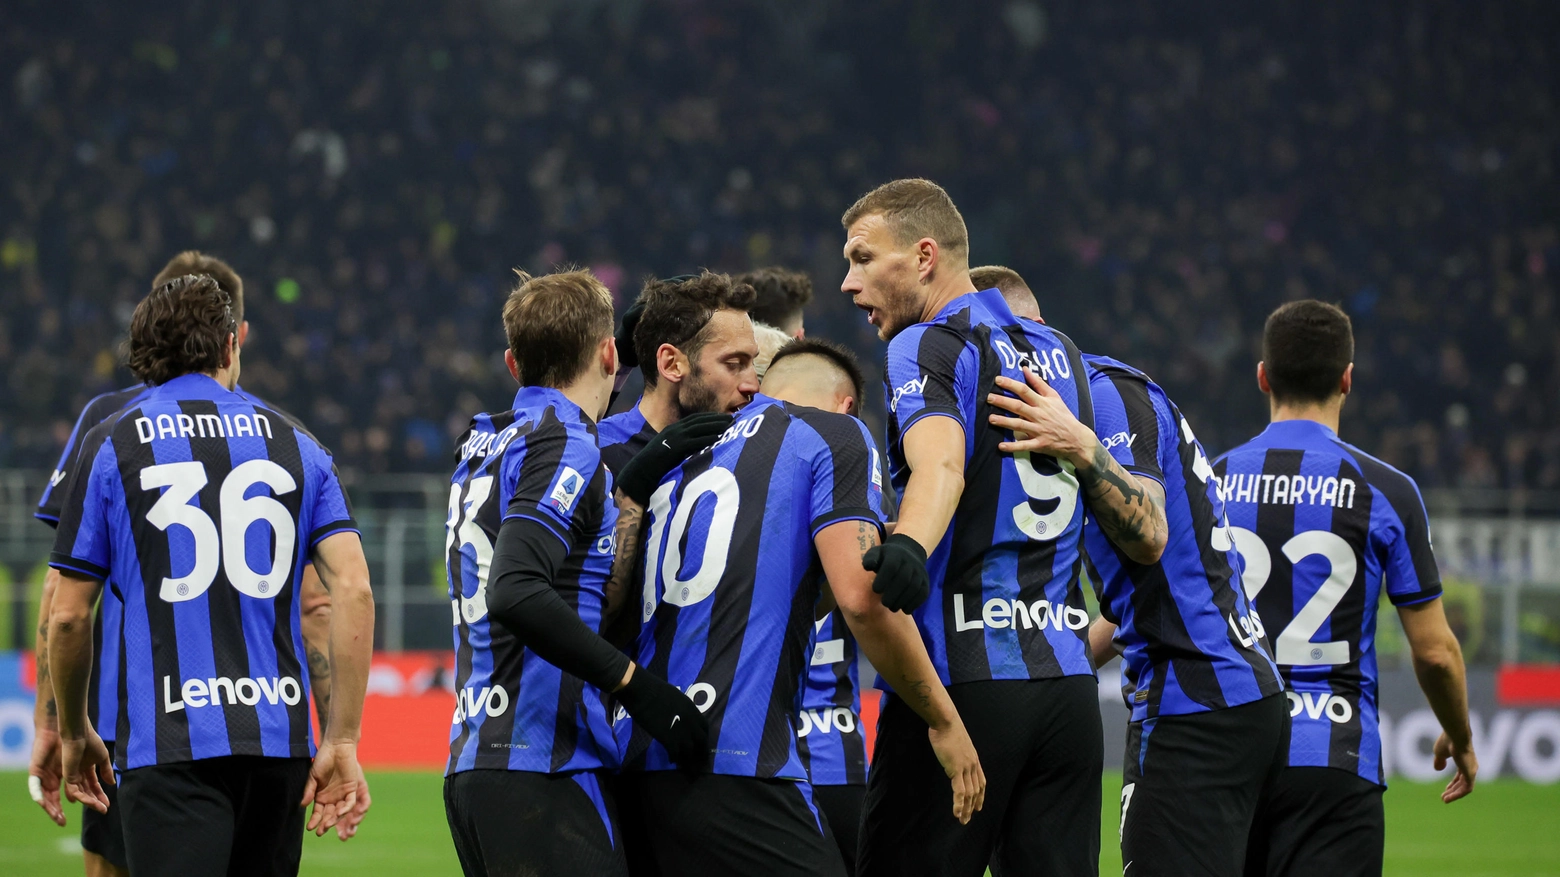 L'Inter, dopo la vittoria nel derby, si trova in seconda posizione a -13 dal Napoli